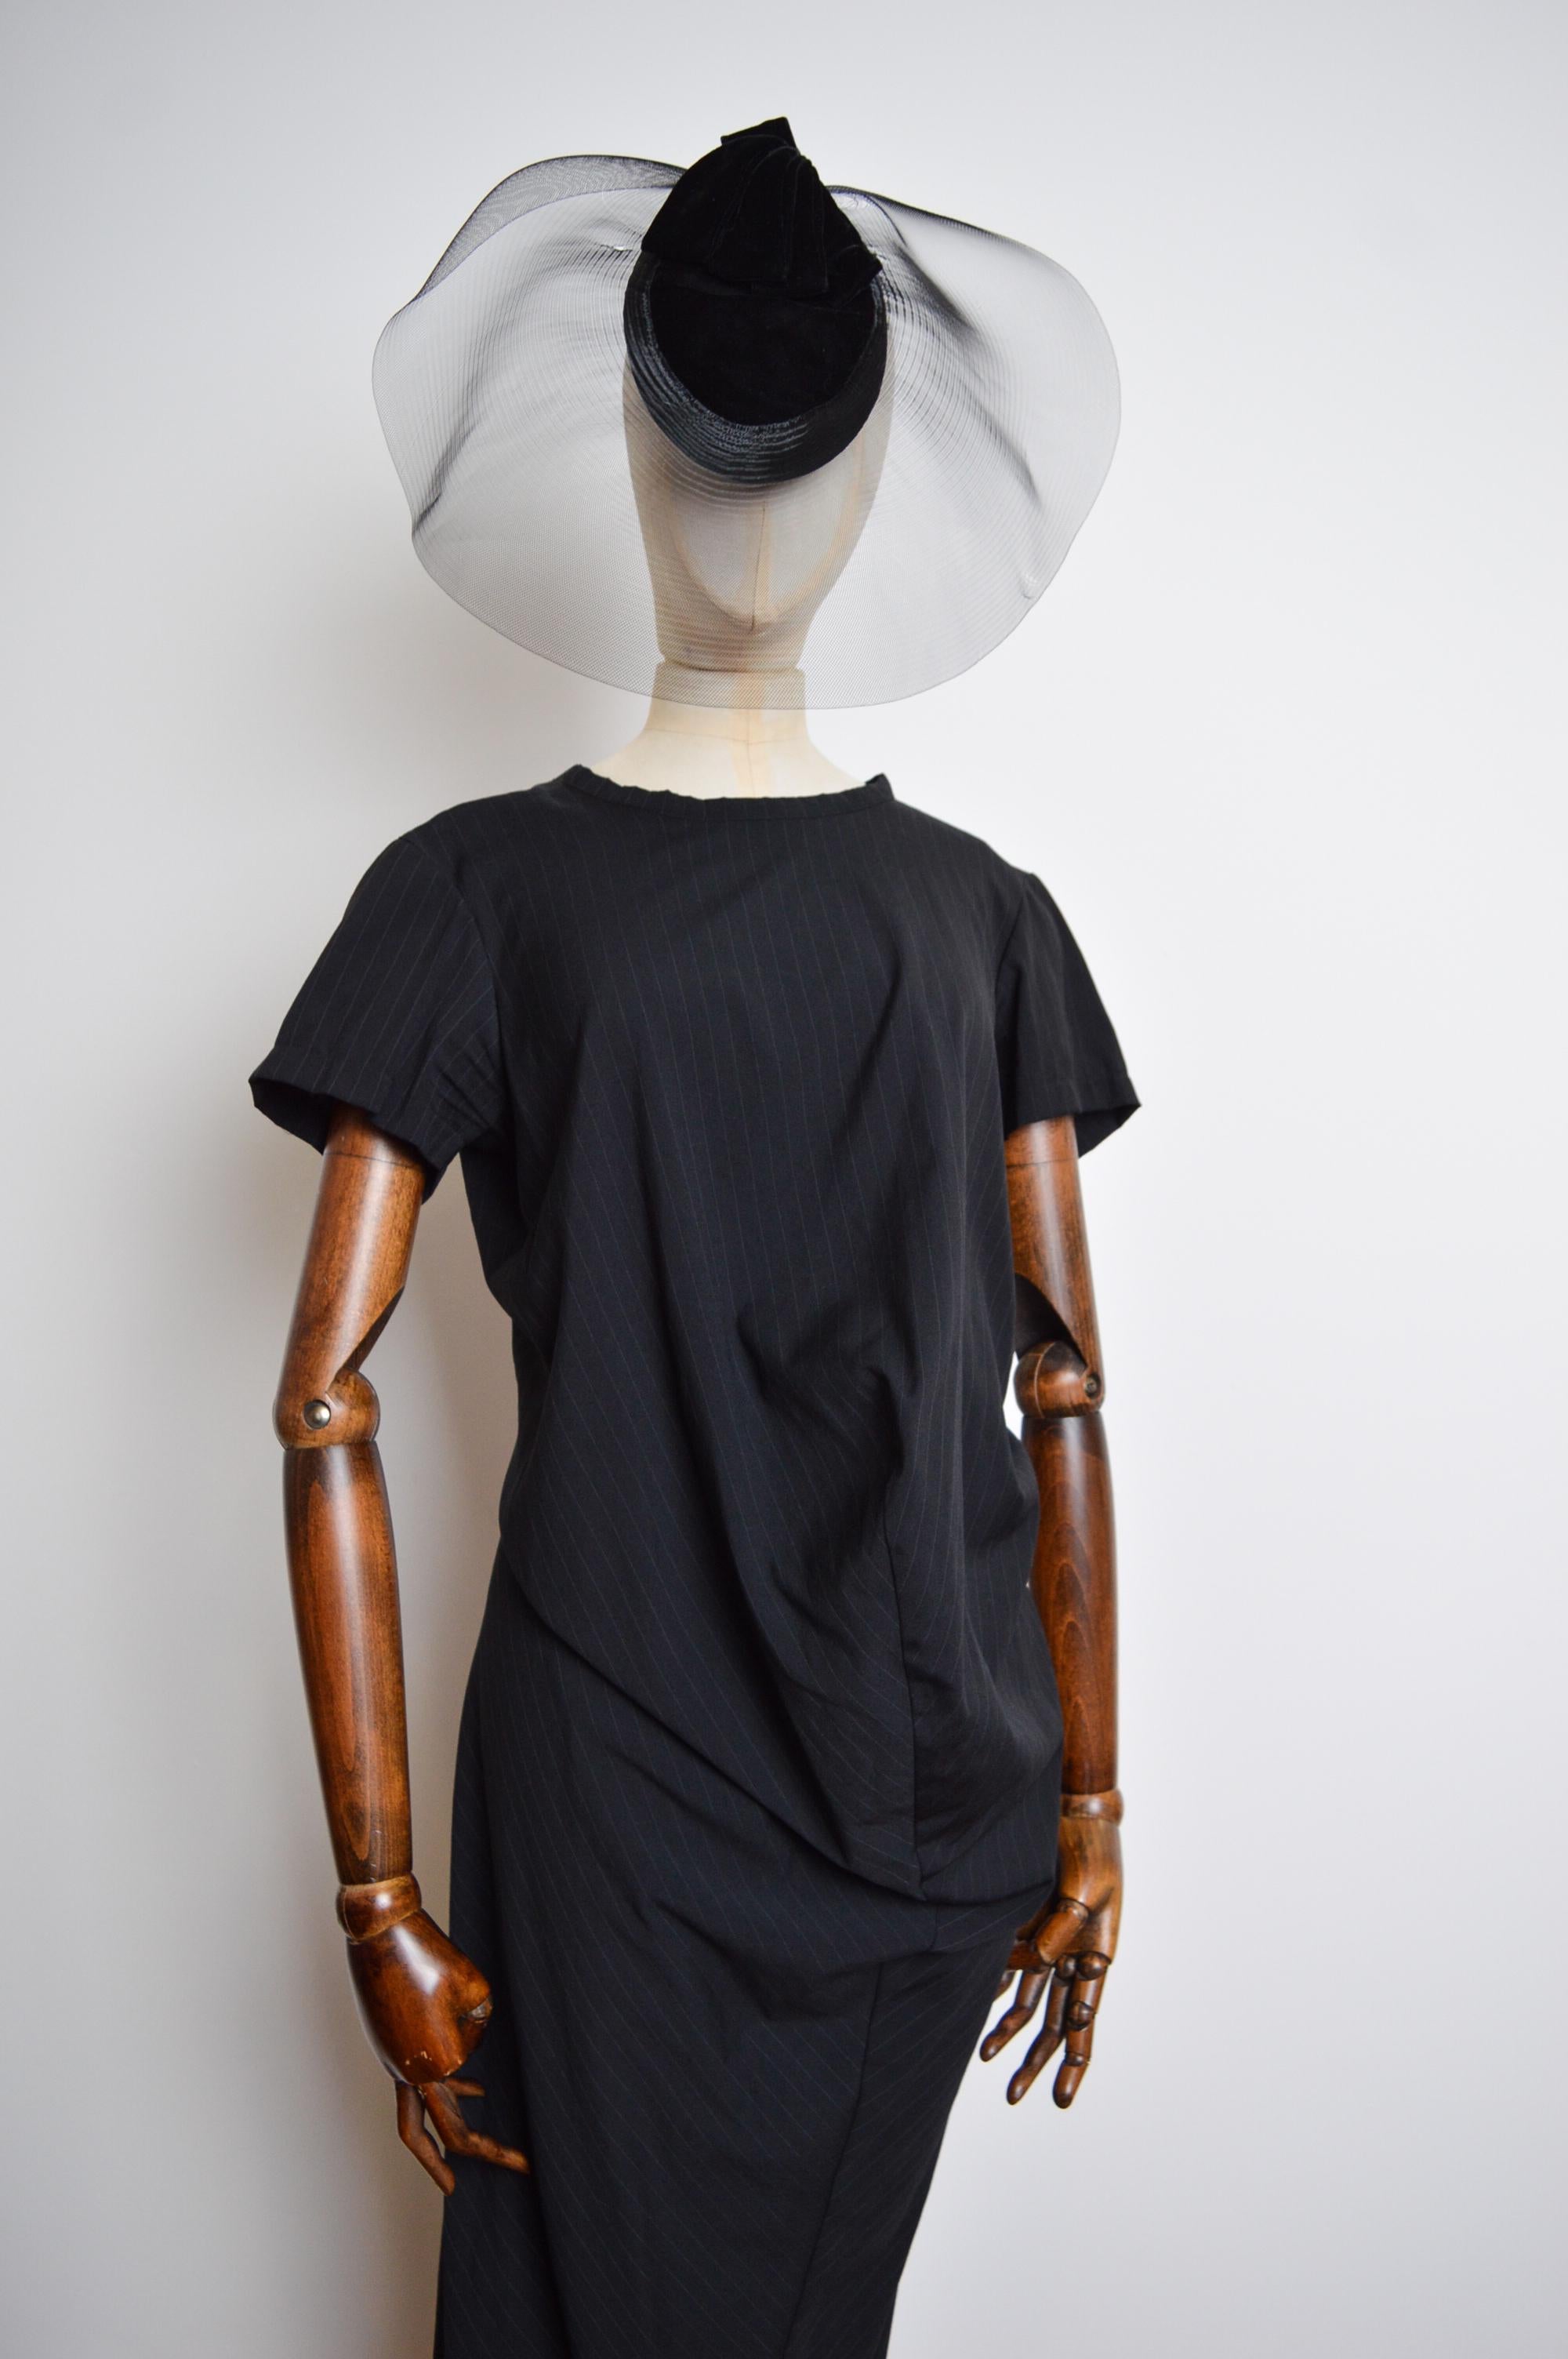 1999 Comme des Garçons 'Robe de Chambre' Avant Guard Body meets Dress style For Sale 13